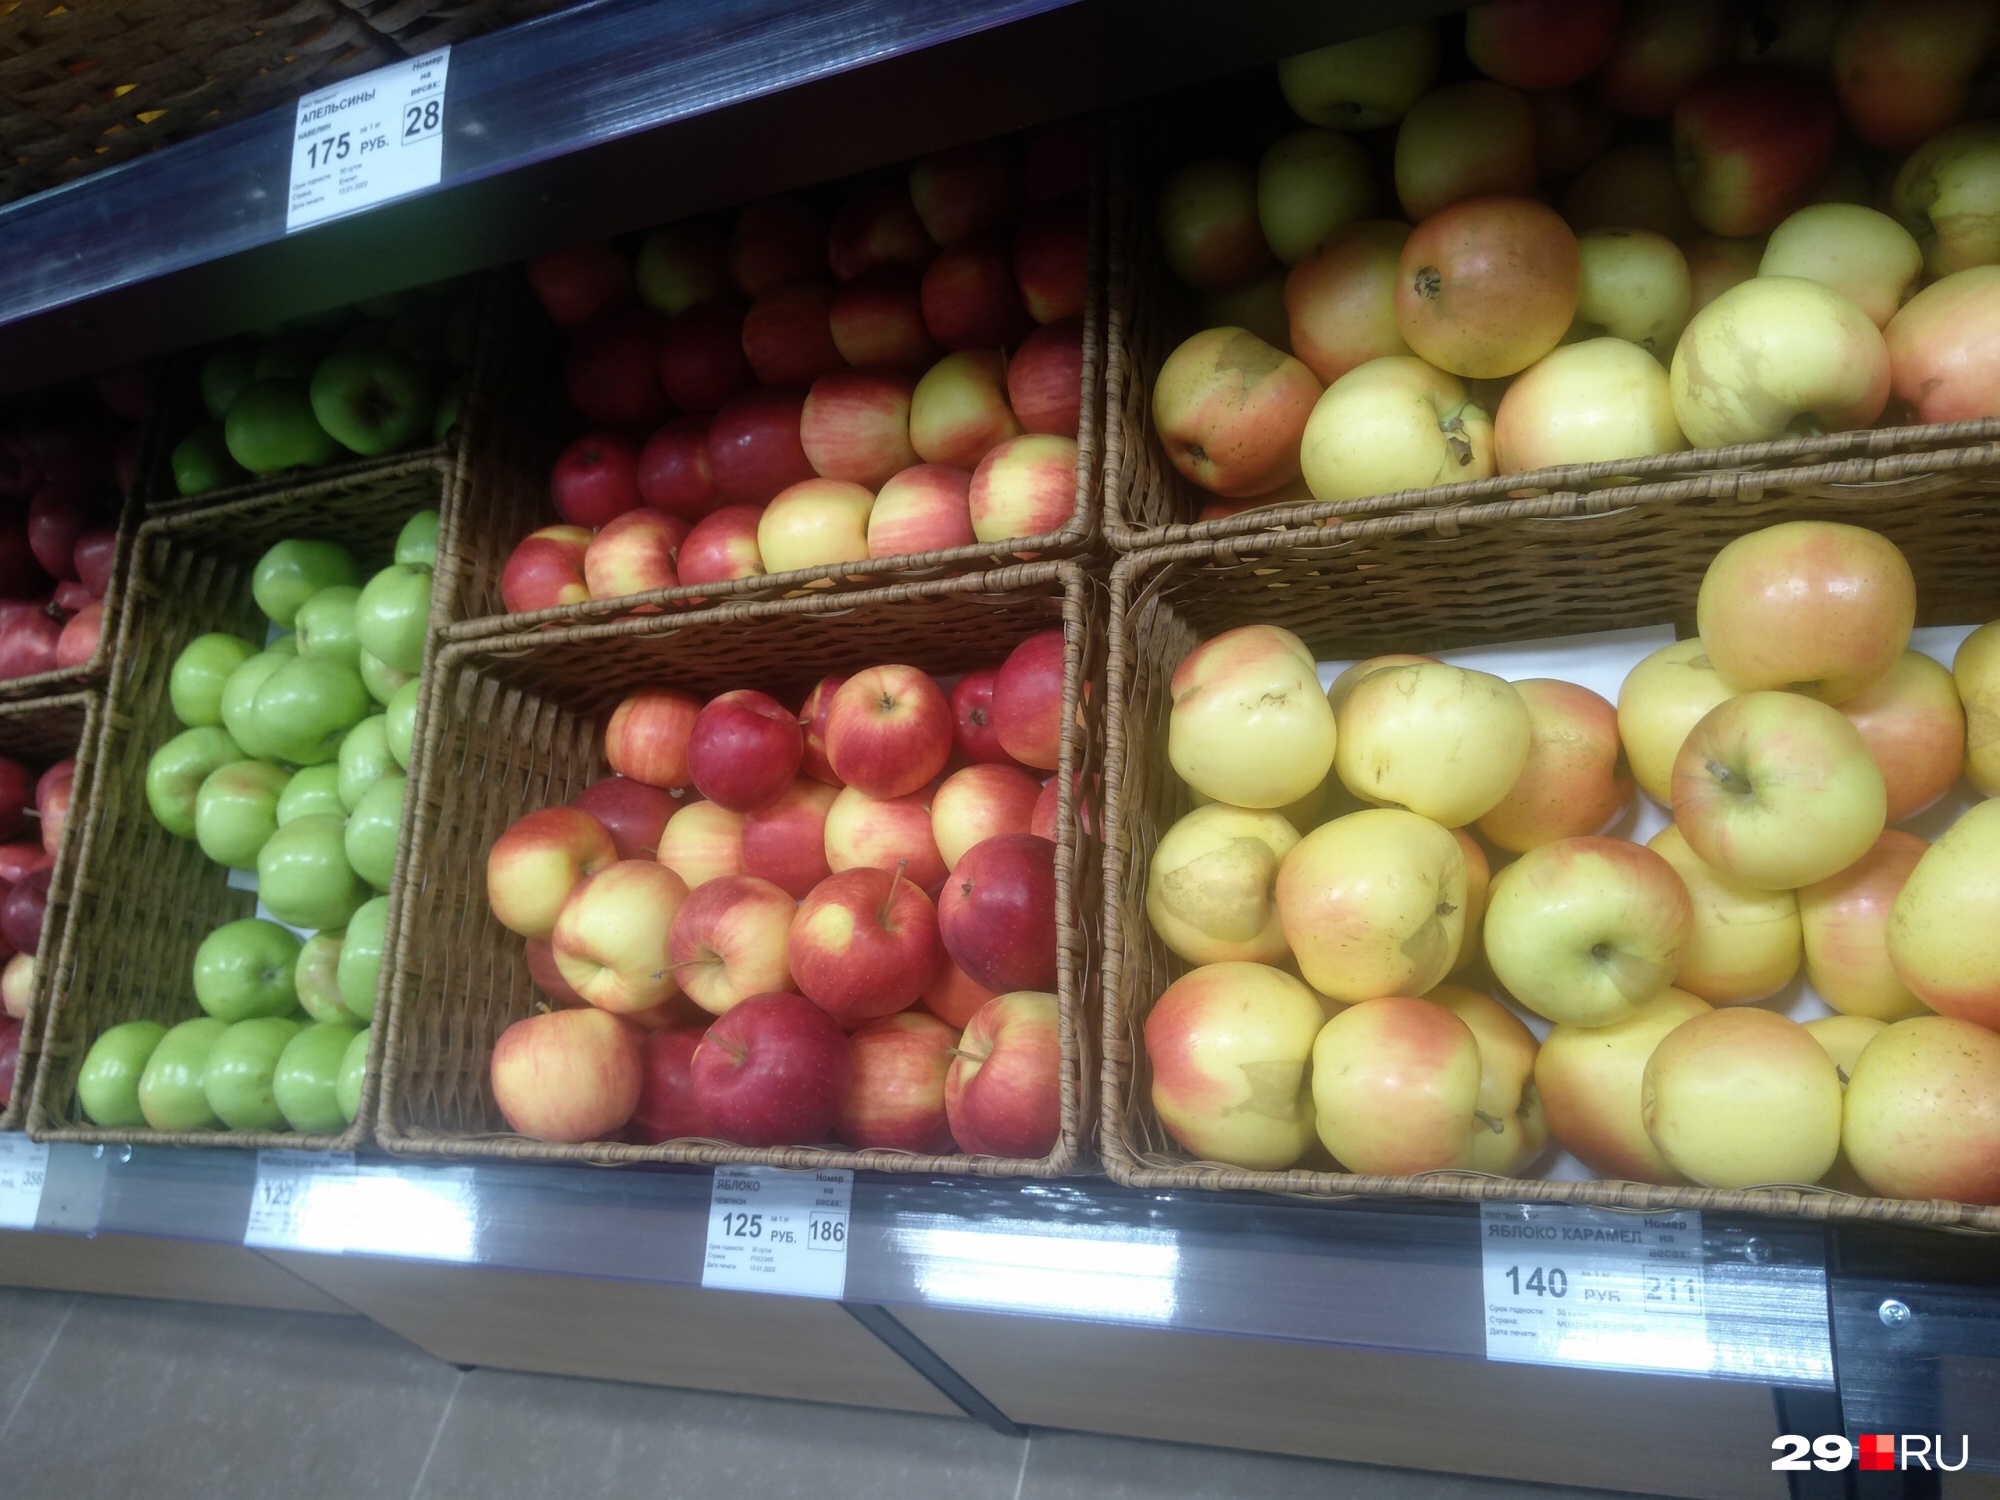 Яблоки по 125–140 рублей за килограмм. Как вы считаете, дорого?